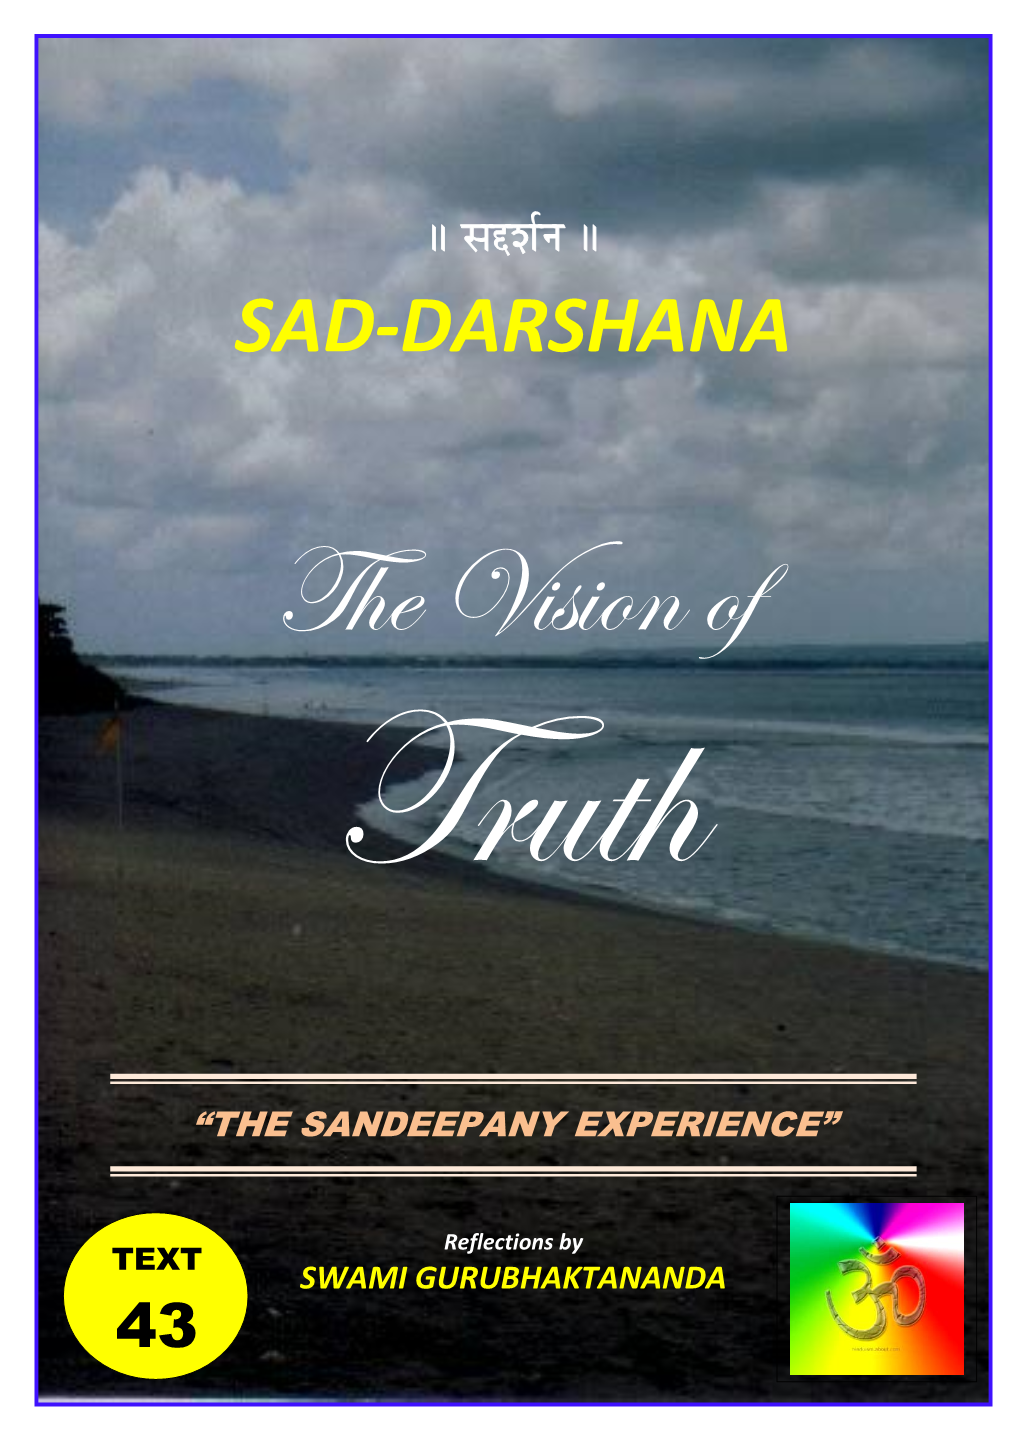 Sad-Darshana